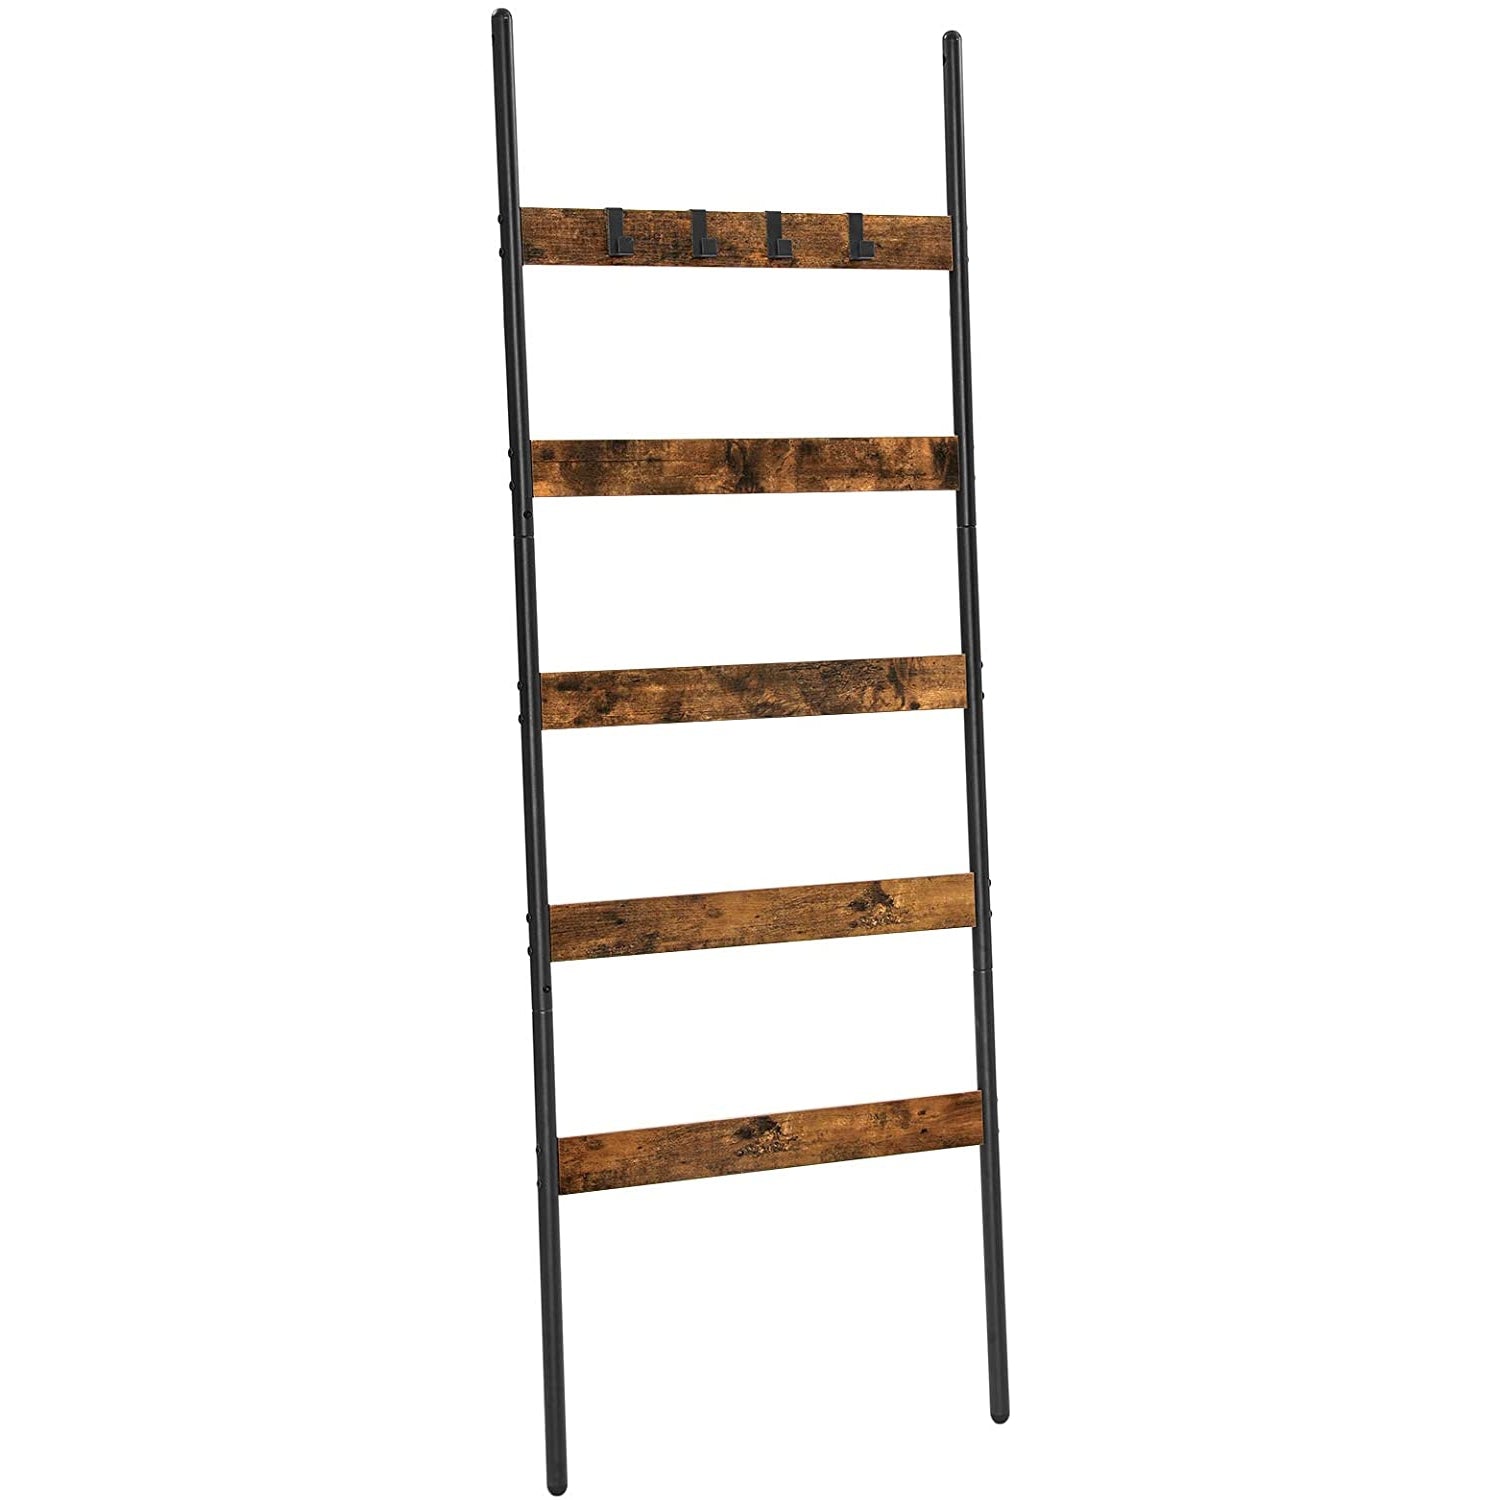 Nancy's Towel Ladder - Towel Rack - Bathroom Rack - Ladder Rack - Industrial Design - Vintage - Brown/Black - 70 x 30 x 121.5 cm (L x W x H)